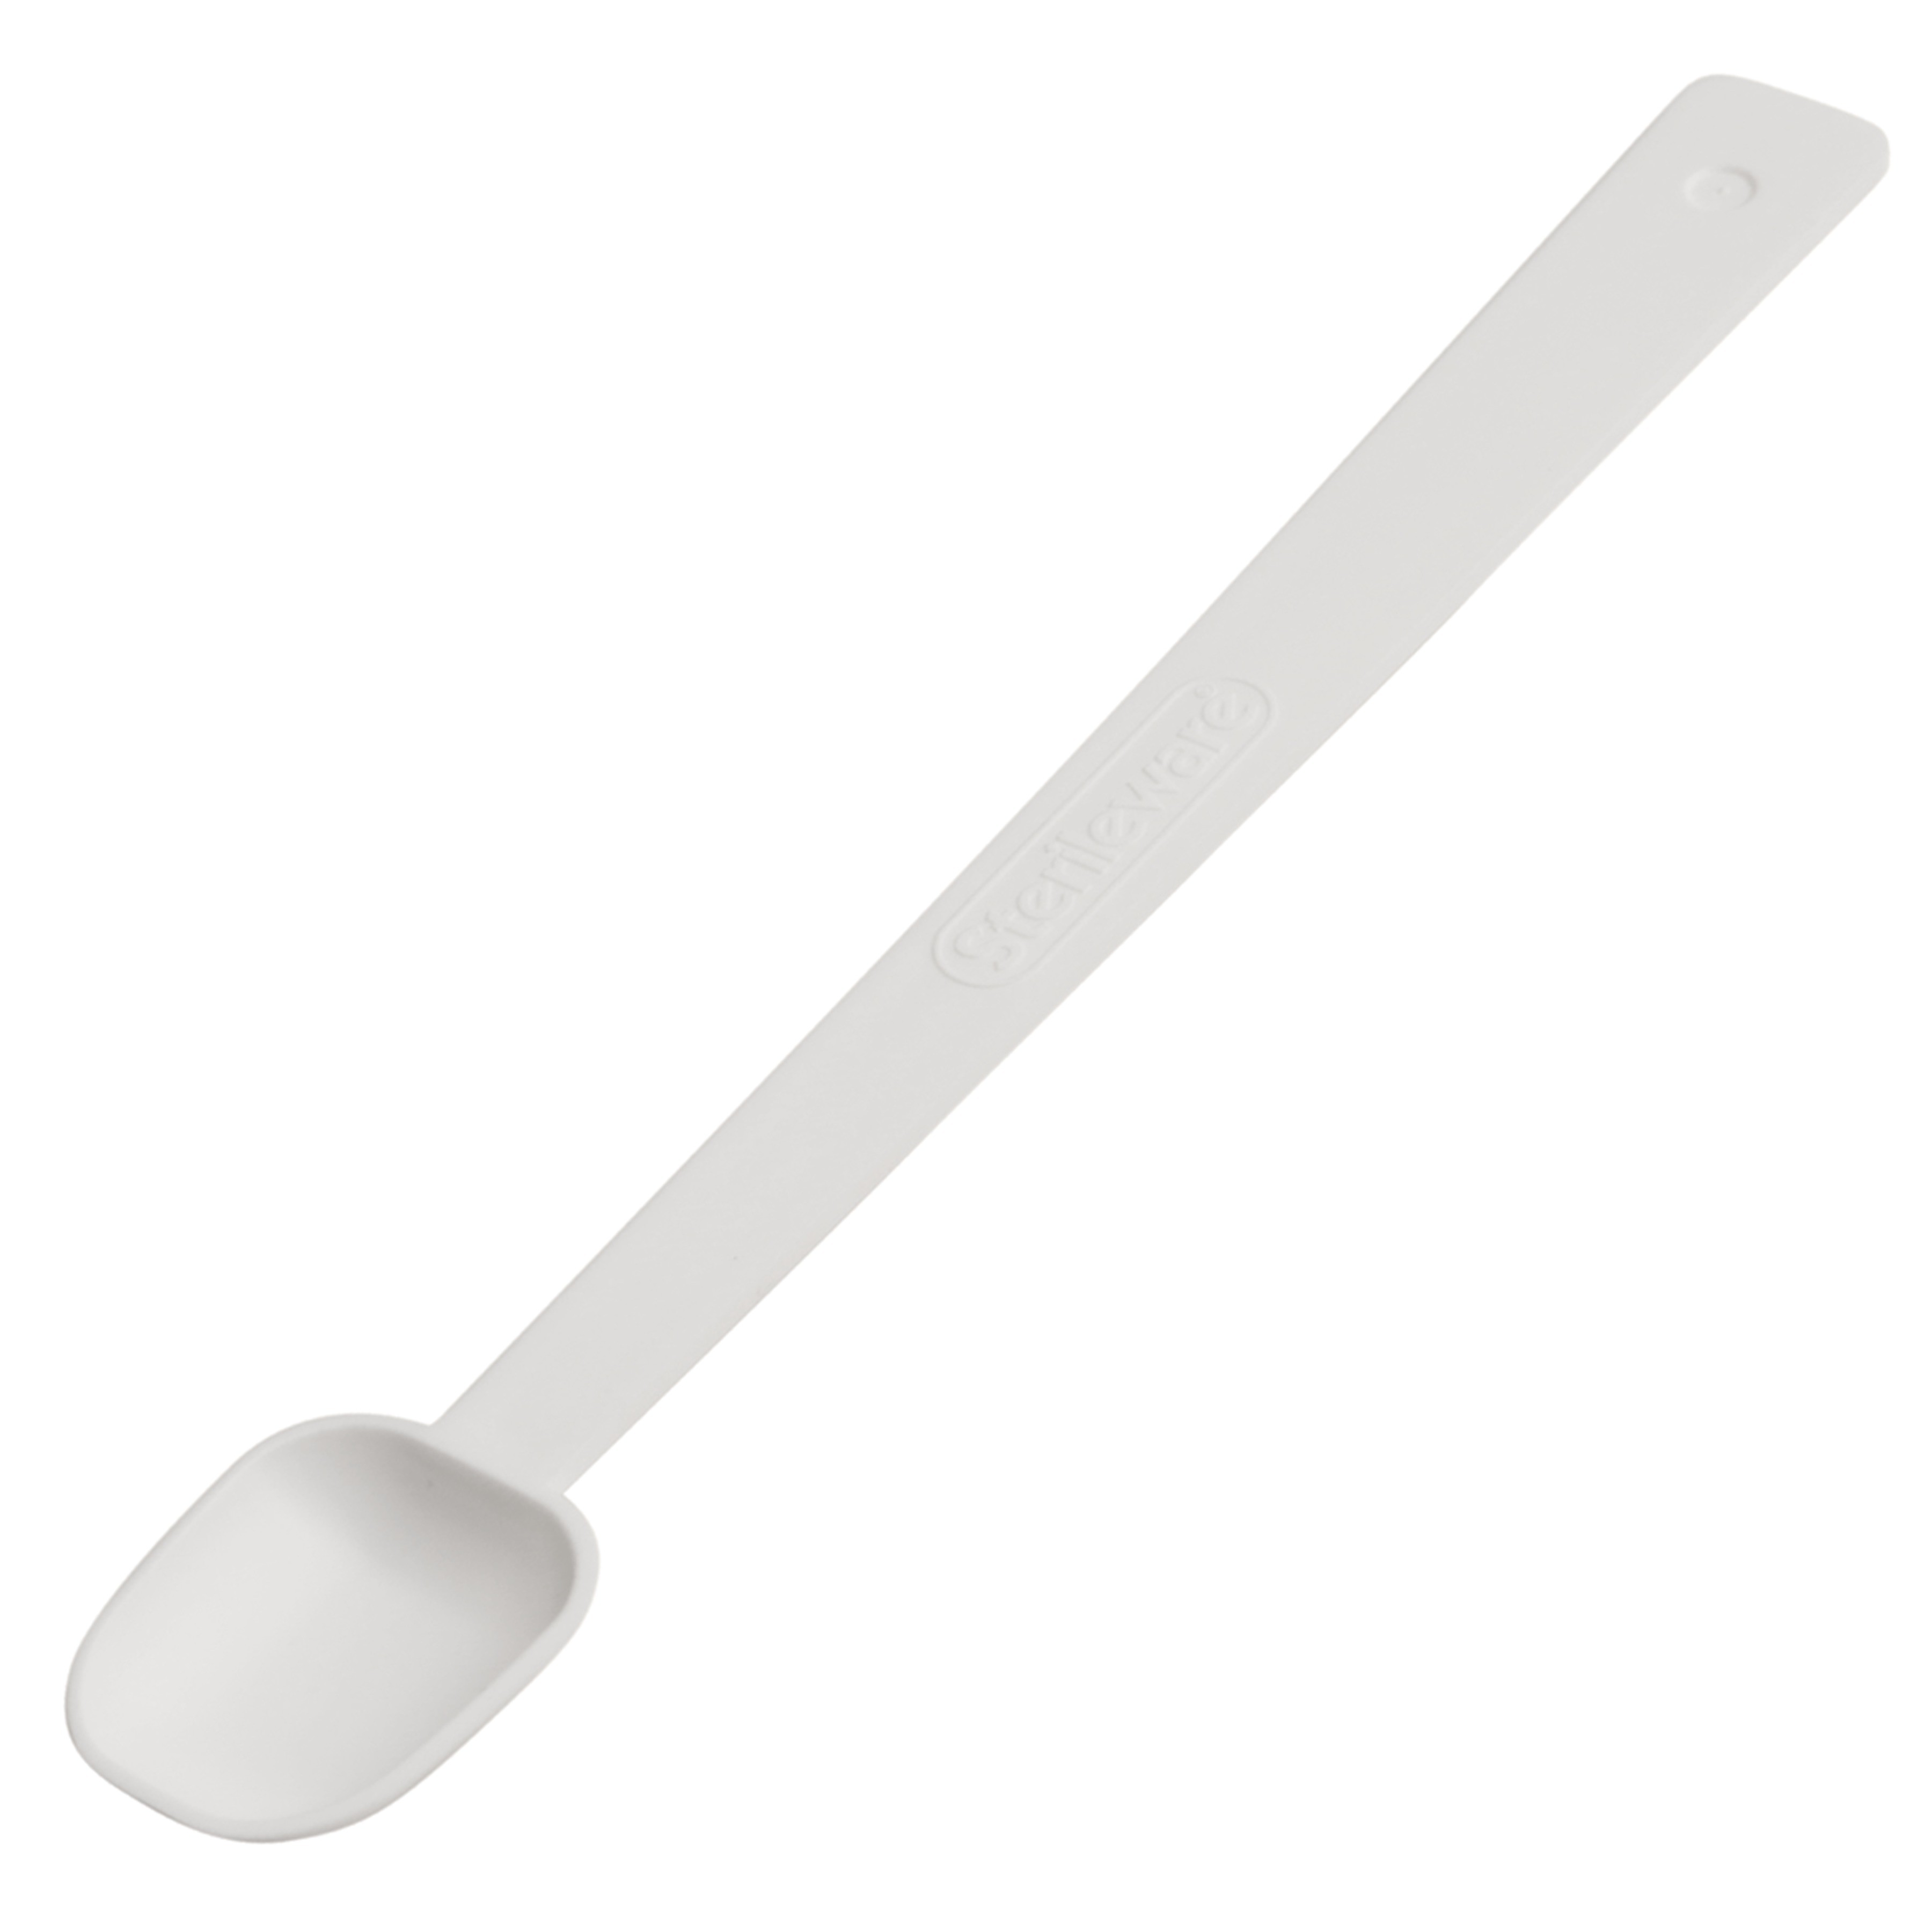 SP Bel-Art Long Handle Sampling Spoon; 2.46ml (½tsp), Non-Sterile Plastic (Pack of 12)